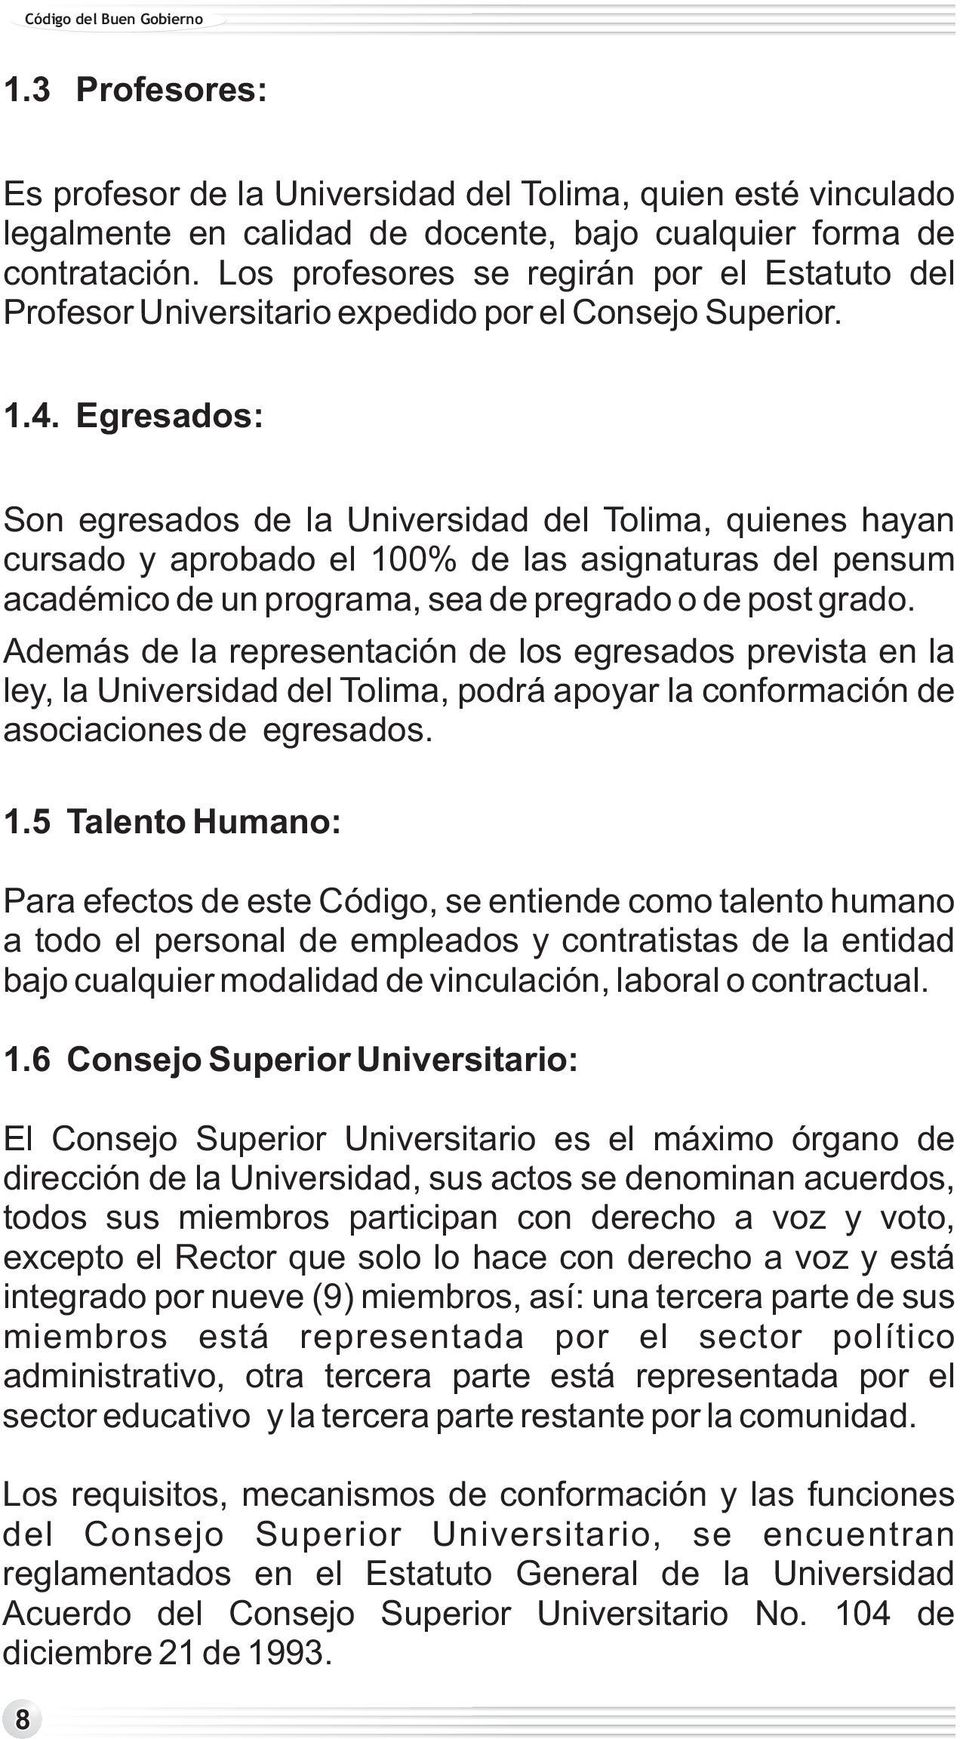 Egresados: Son egresados de la Universidad del Tolima, quienes hayan cursado y aprobado el 100% de las asignaturas del pensum académico de un programa, sea de pregrado o de post grado.